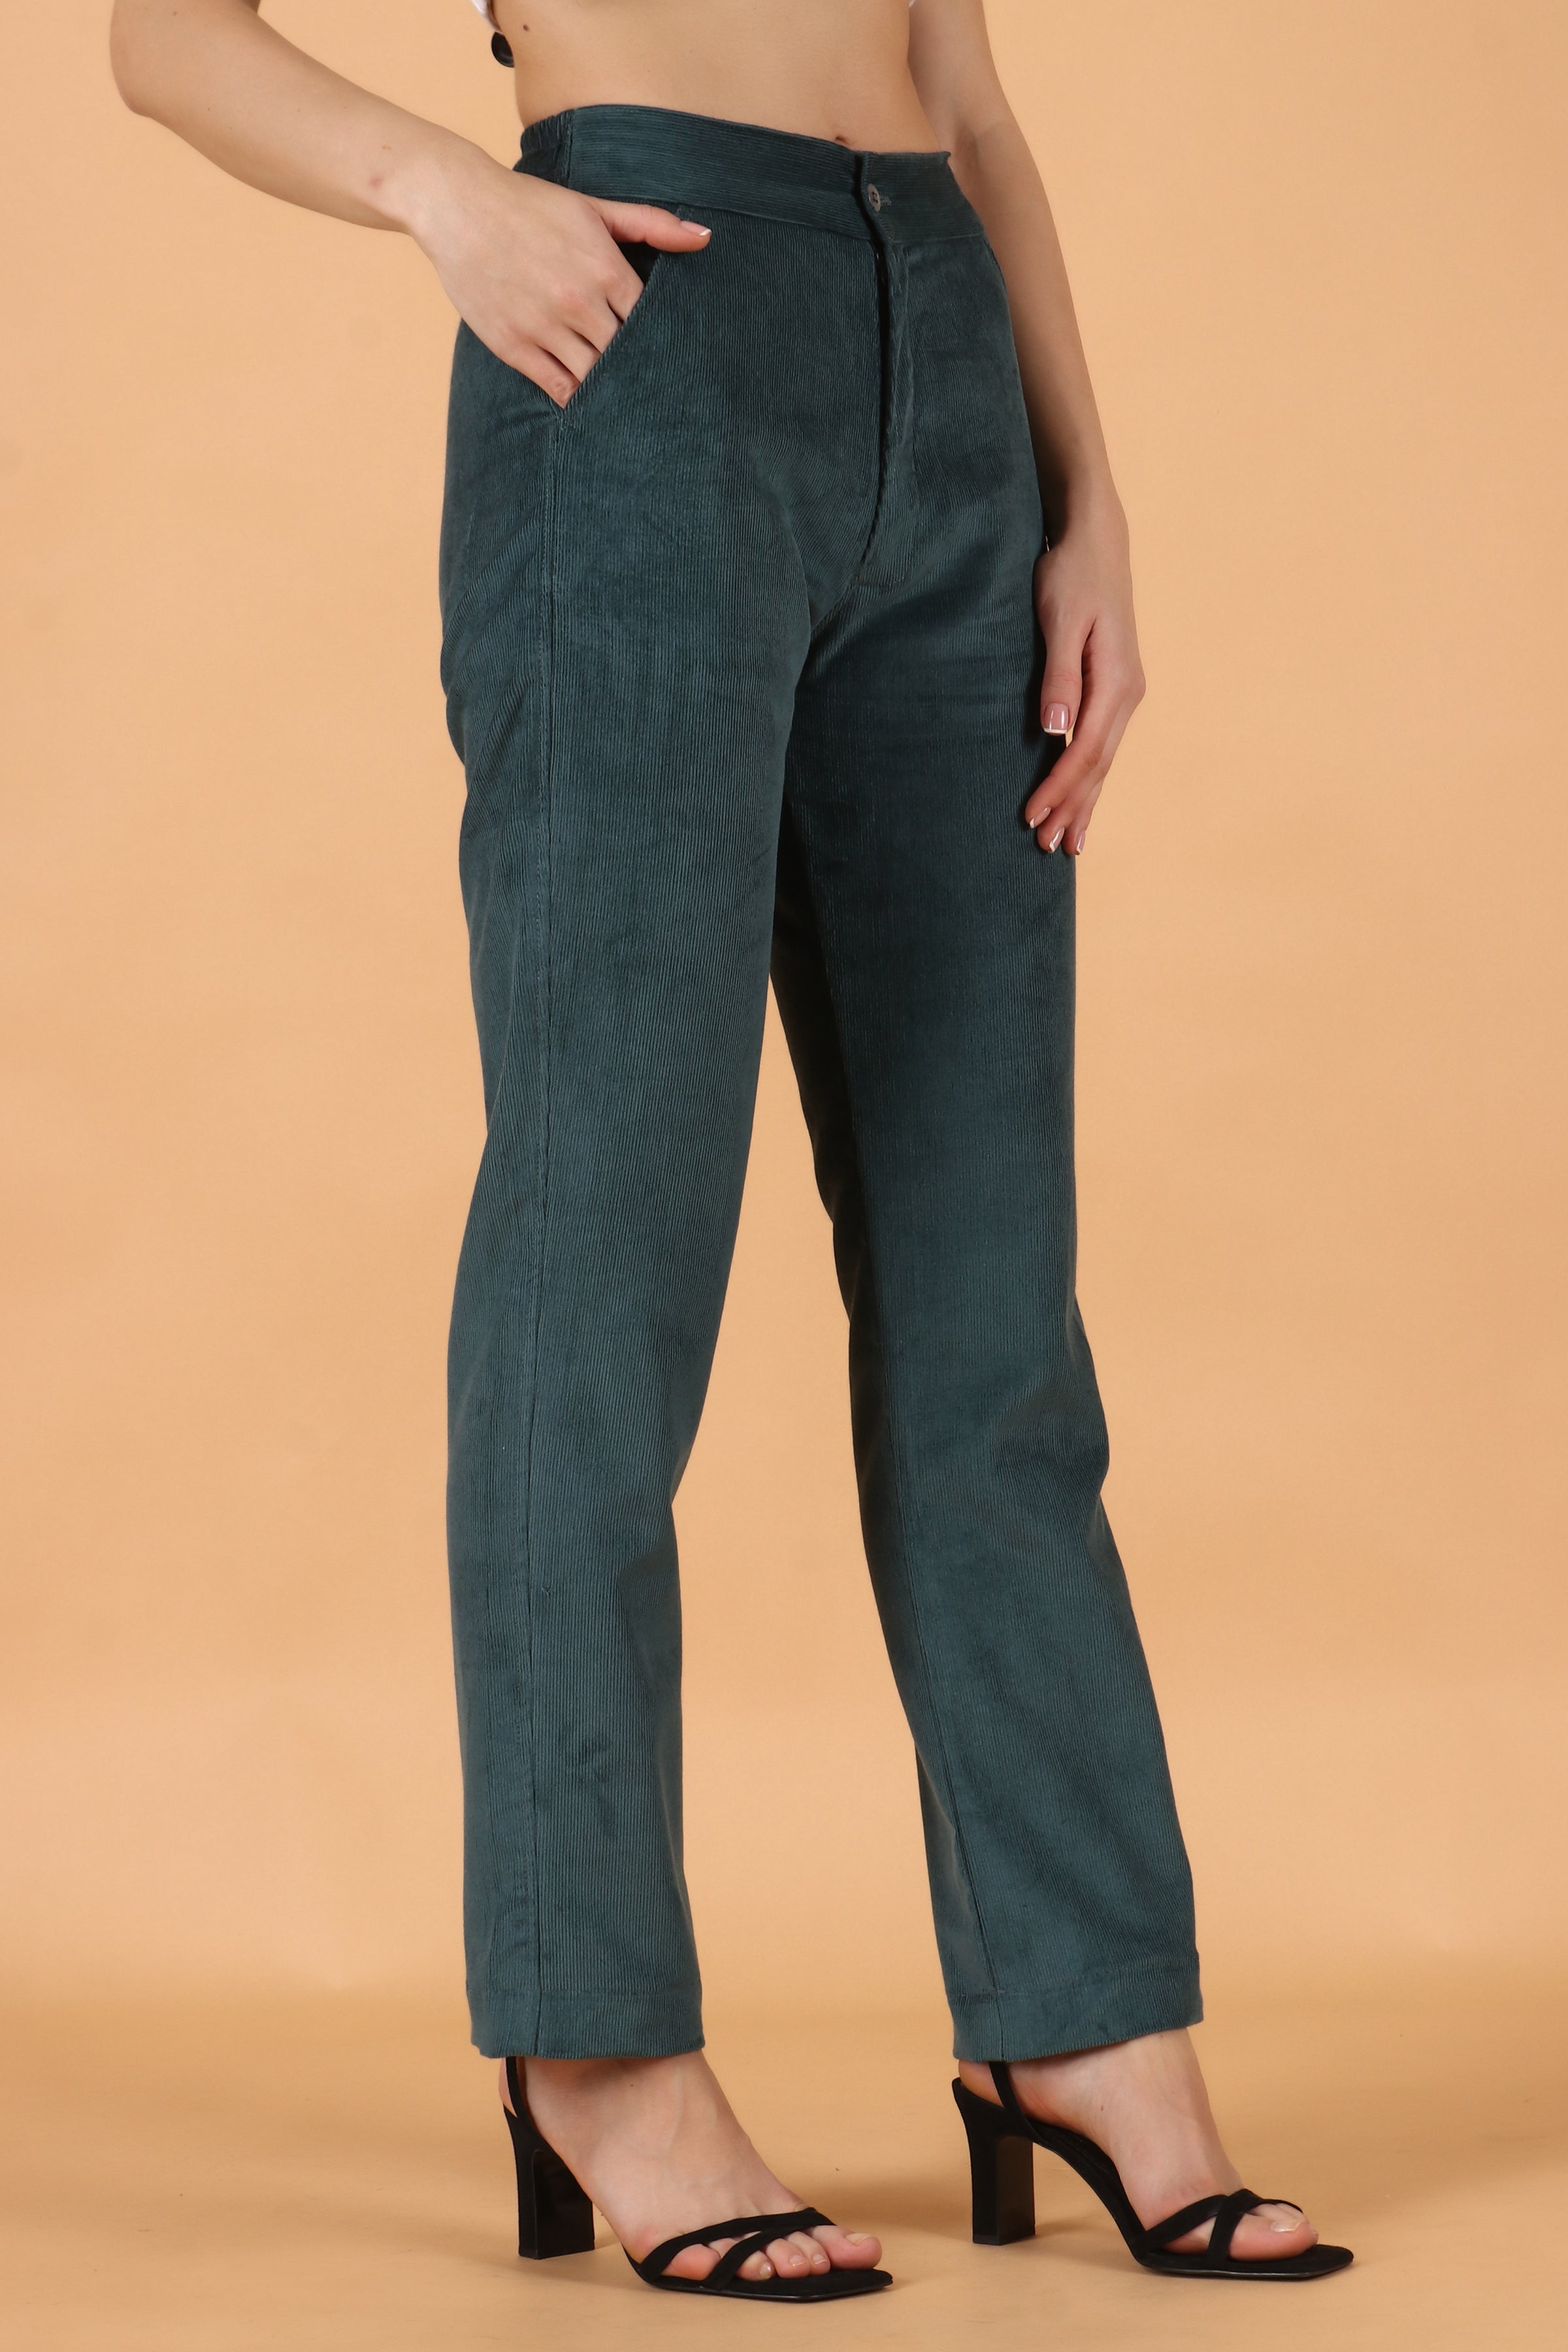 Buy Brown Corduroy Pants, High Waist Corduroy Pants Women, Loose Pants,  Casual Corduroy Pants, Plus Size Pants, Custom Pants C2432 Online in India  - Etsy